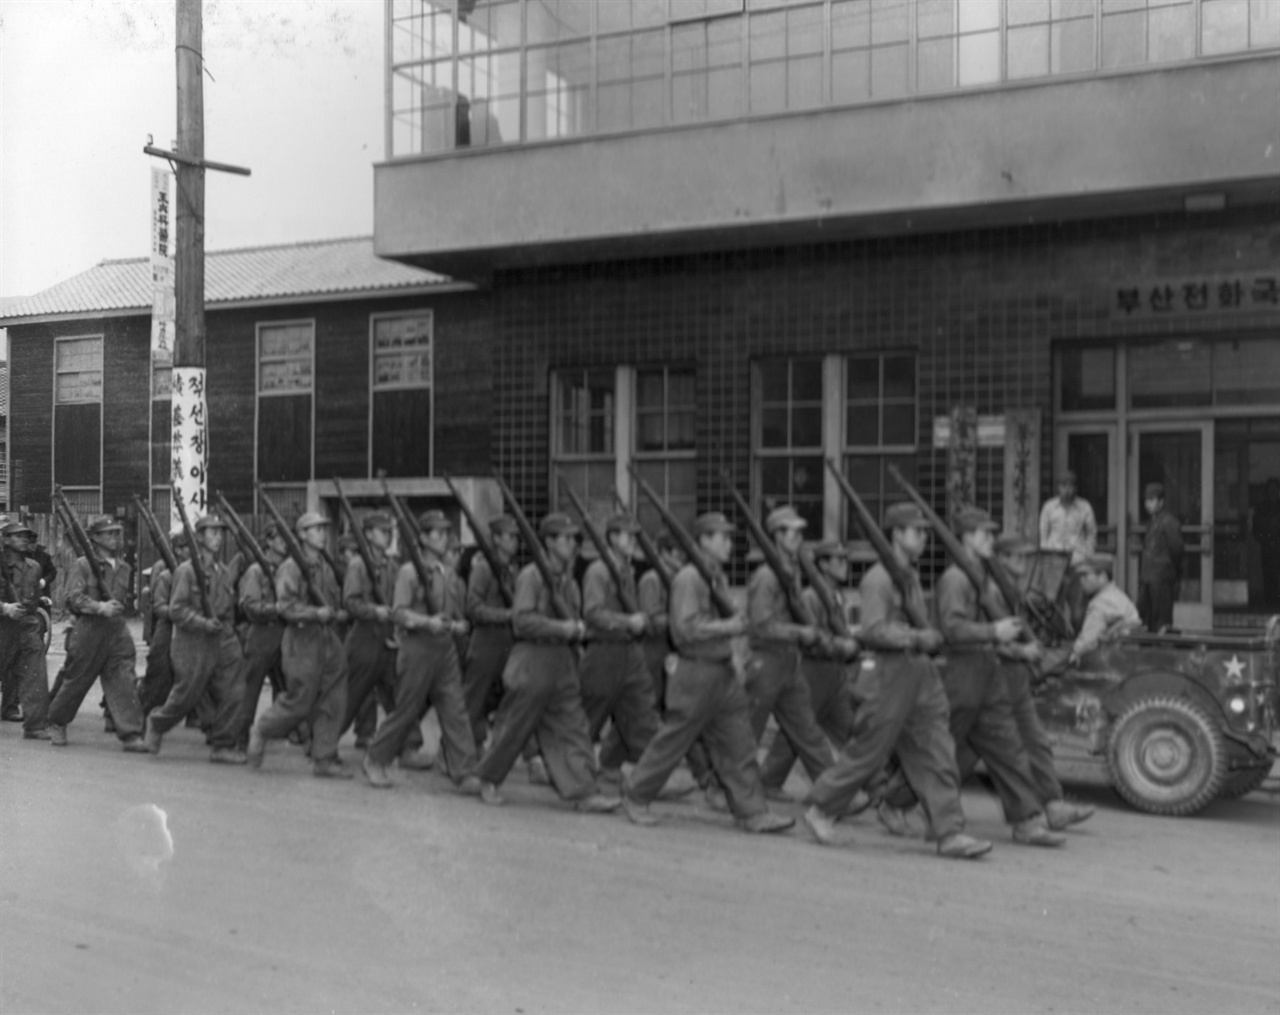  1951. 1. 8. 부산, 훈련병들이 우로 어깨 총 자세로 부산전화국 앞을 지나고 있다.